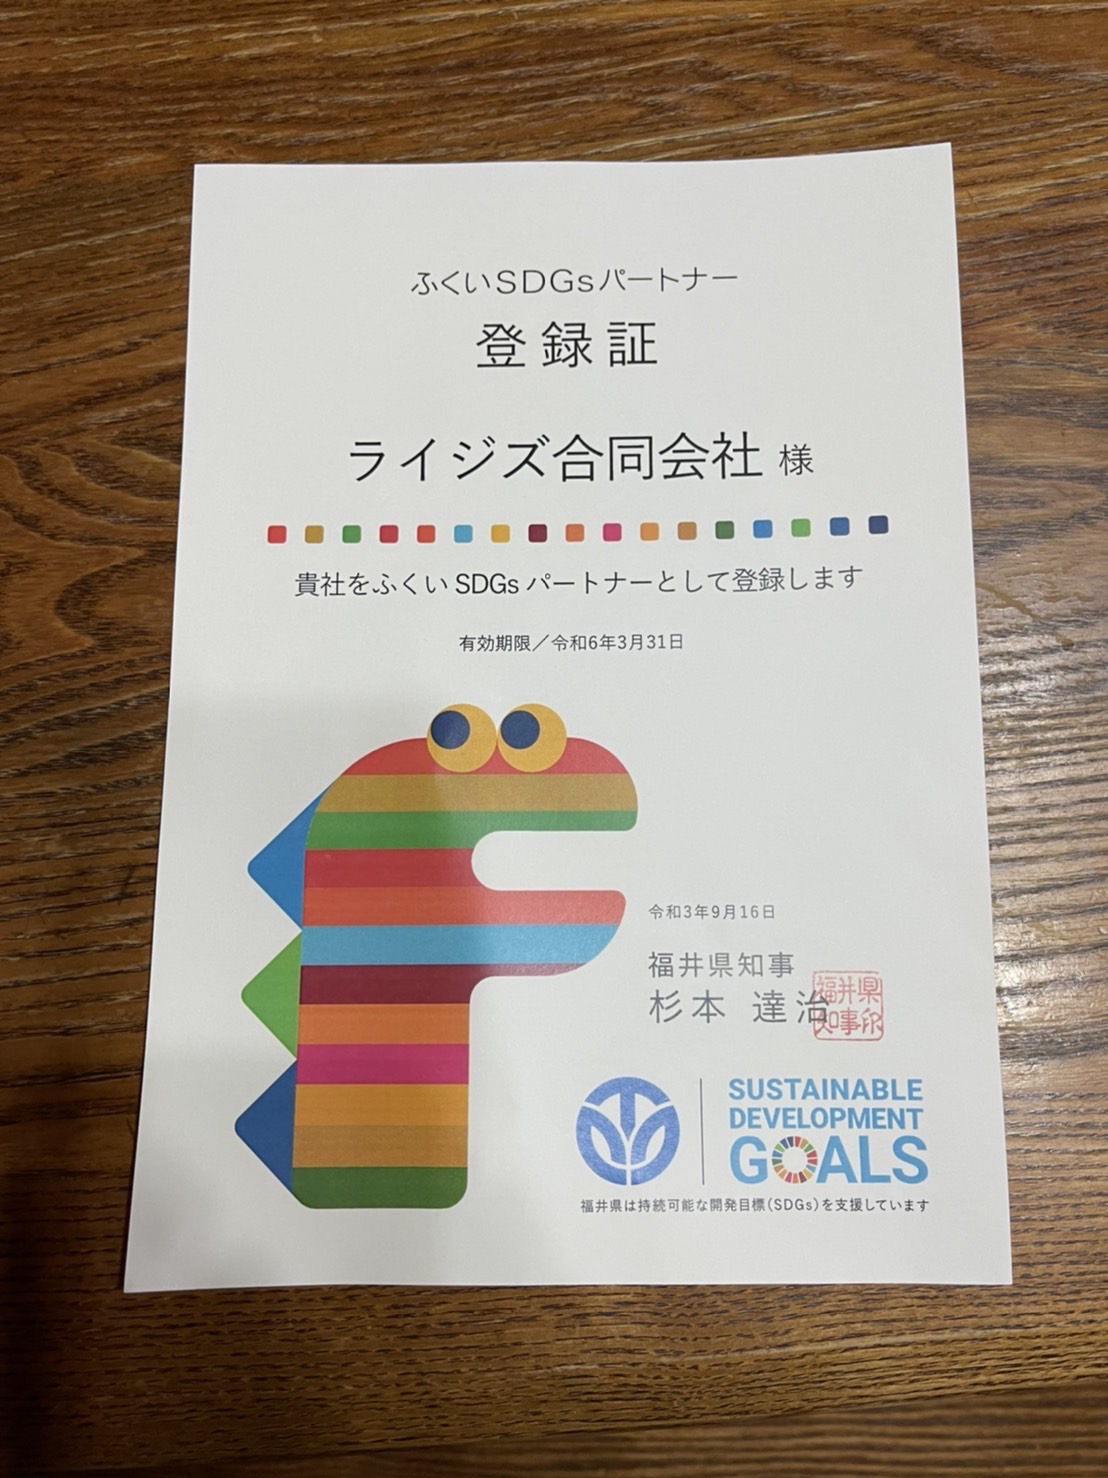 福井SDG sパートナー企業に登録されました！（越前市）